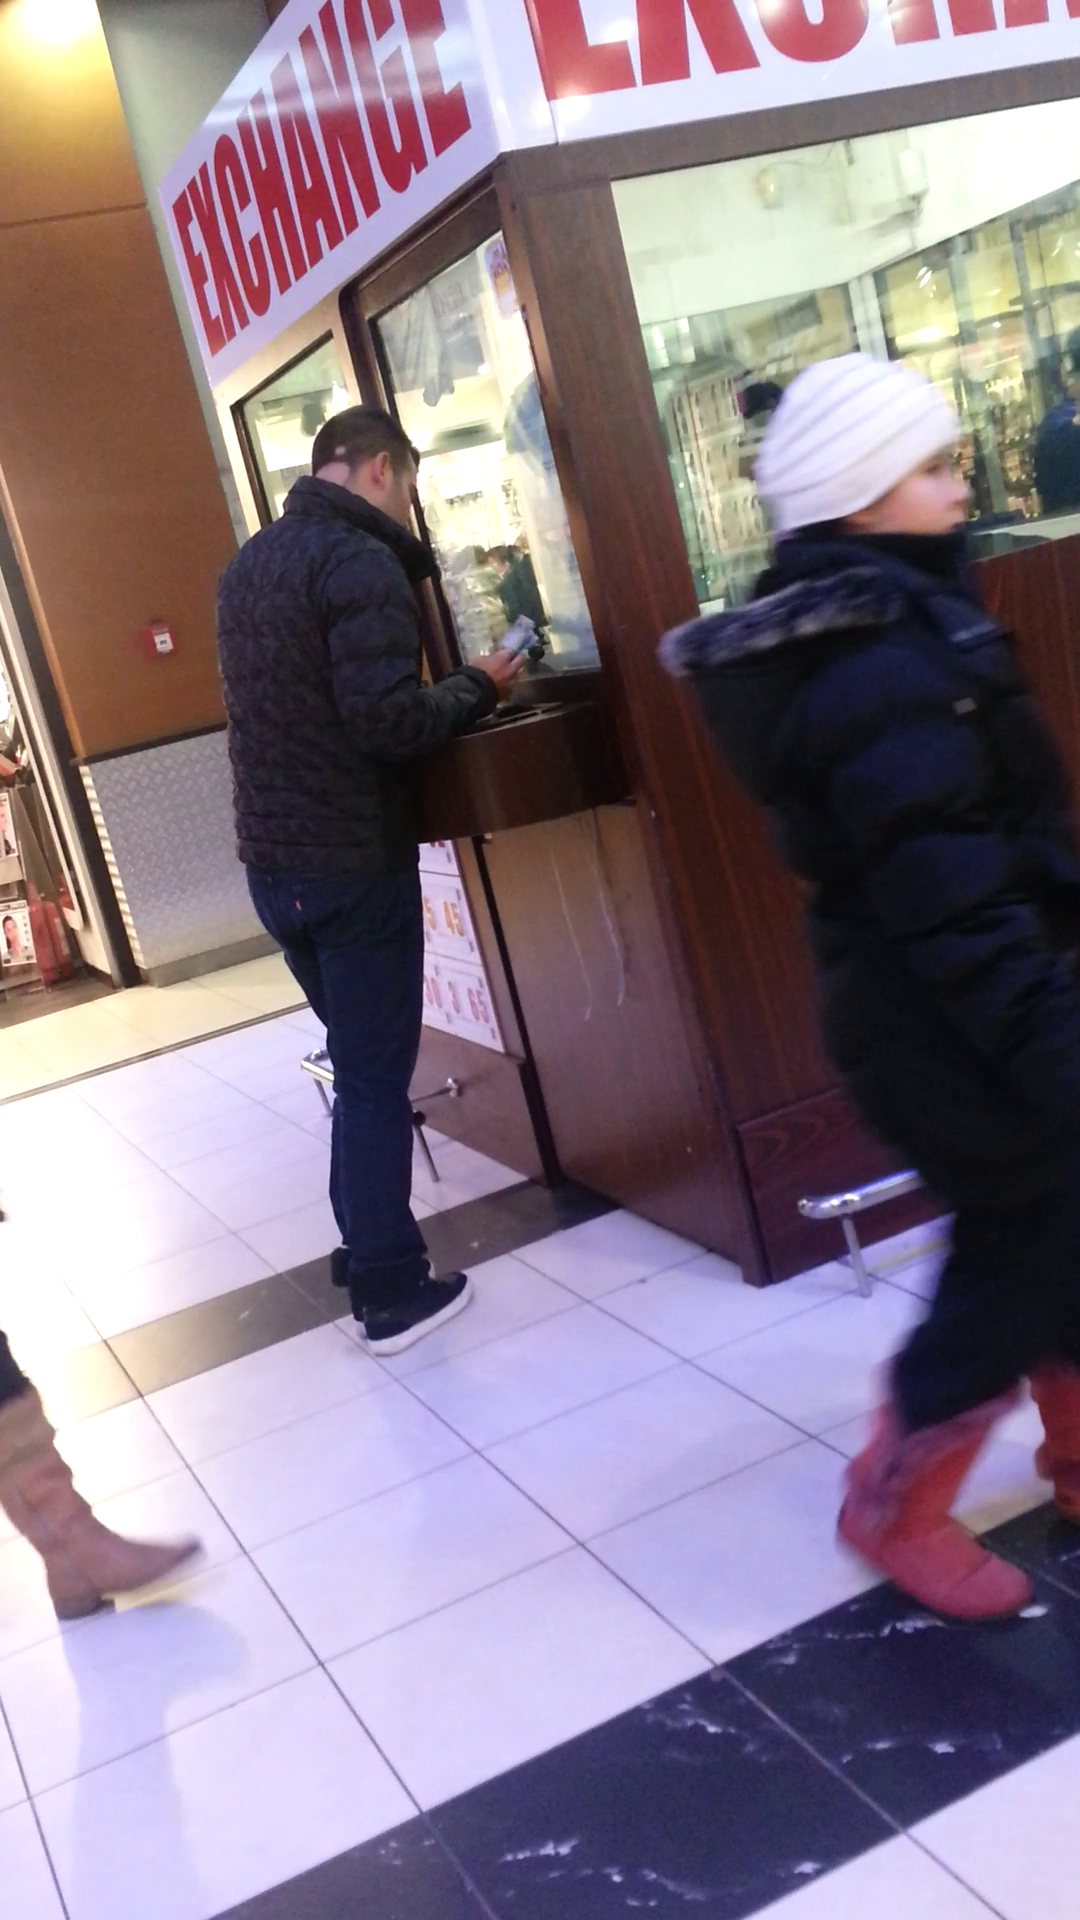 Inainte de shopping, Raducu si-a facut plinul cu lei